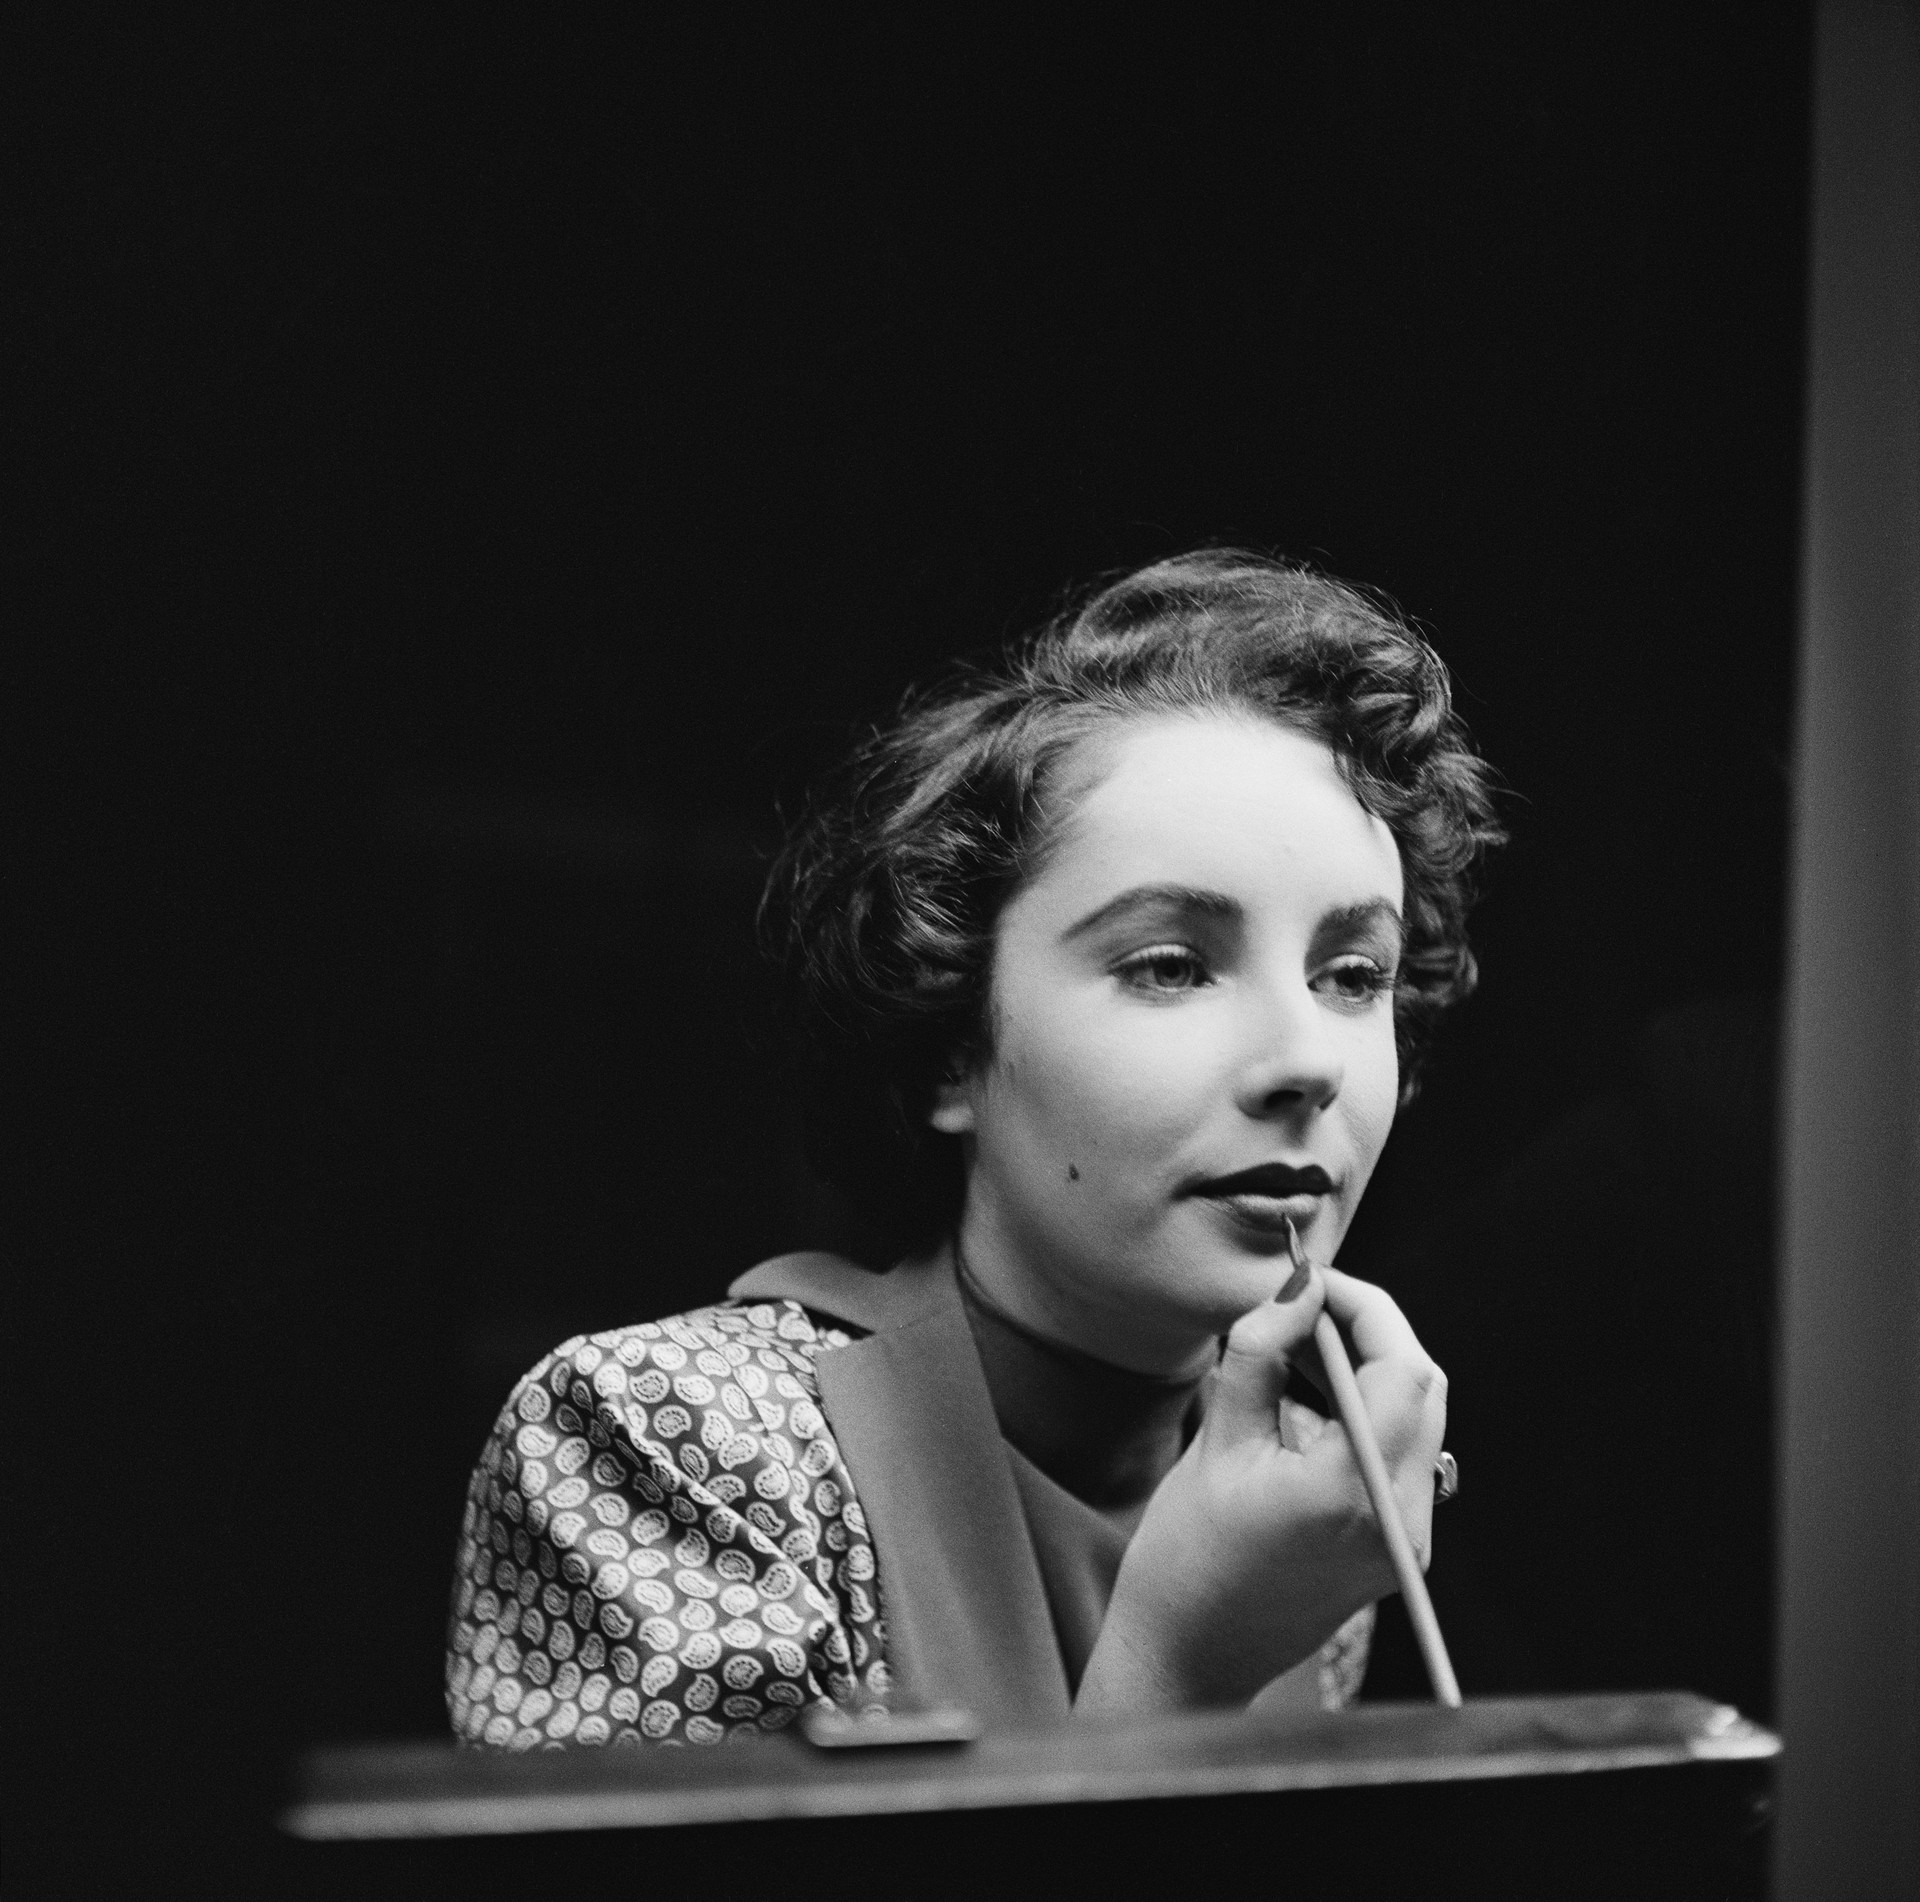 A renomada atriz de ‘Cleópatra’ (1963), ‘Gata em Teto de Zinco Quente’ (1958) e ‘Quem Tem Medo de Virginia Woolf’ (1966) submeteu-se a uma radioterapia para câncer de pele em 2001. A artista faleceu em 2011 por problemas relacionados ao coração. (Foto: Getty Images)